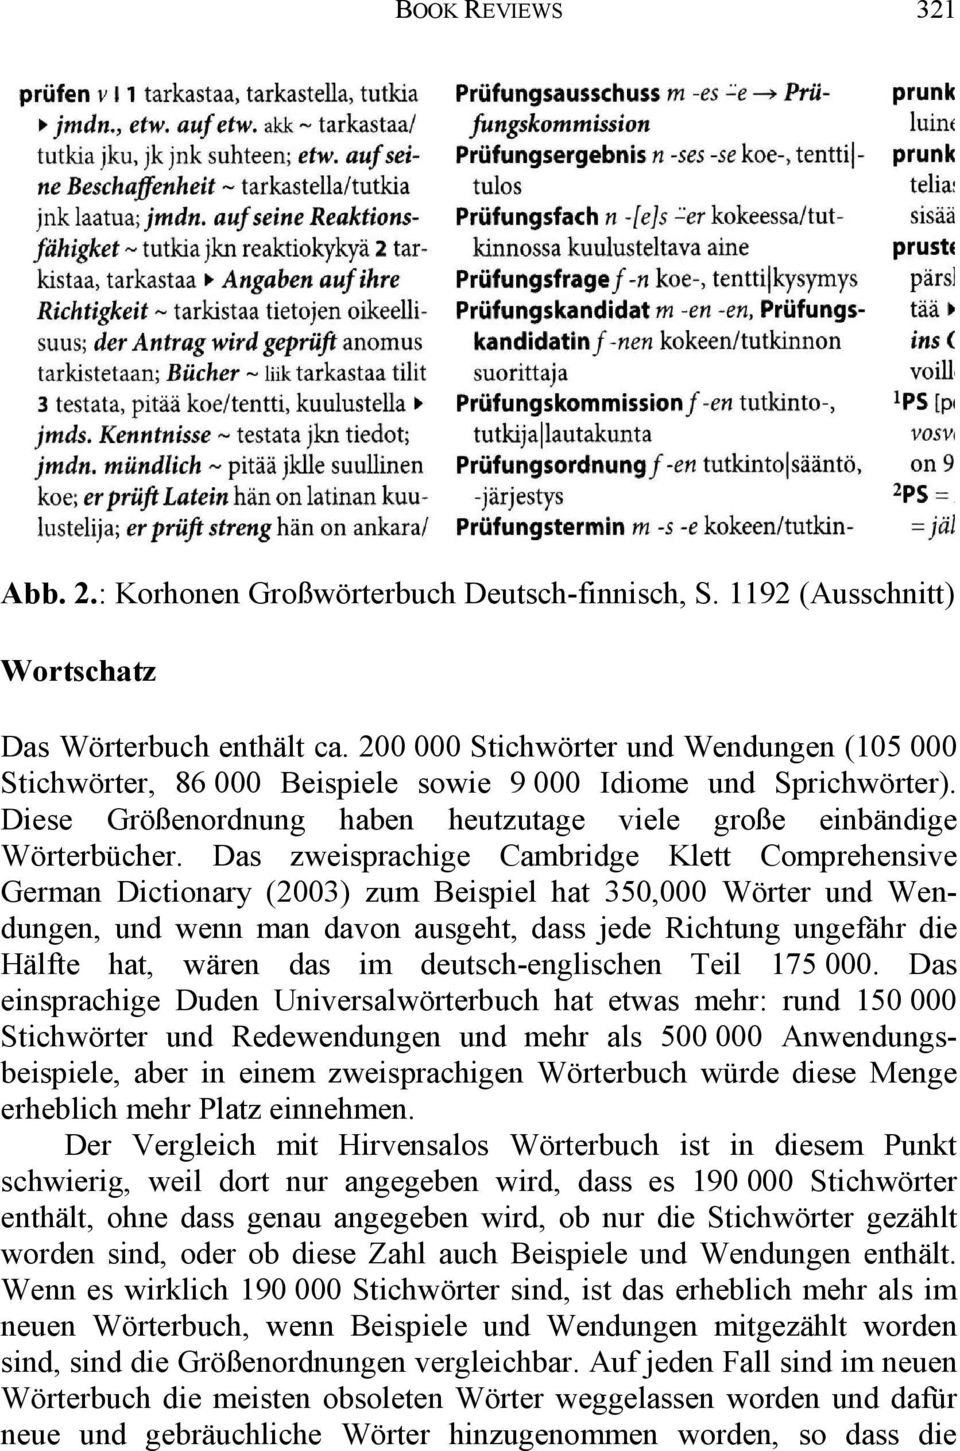 Das zweisprachige Cambridge Klett Comprehensive German Dictionary (2003) zum Beispiel hat 350,000 Wörter und Wendungen, und wenn man davon ausgeht, dass jede Richtung ungefähr die Hälfte hat, wären